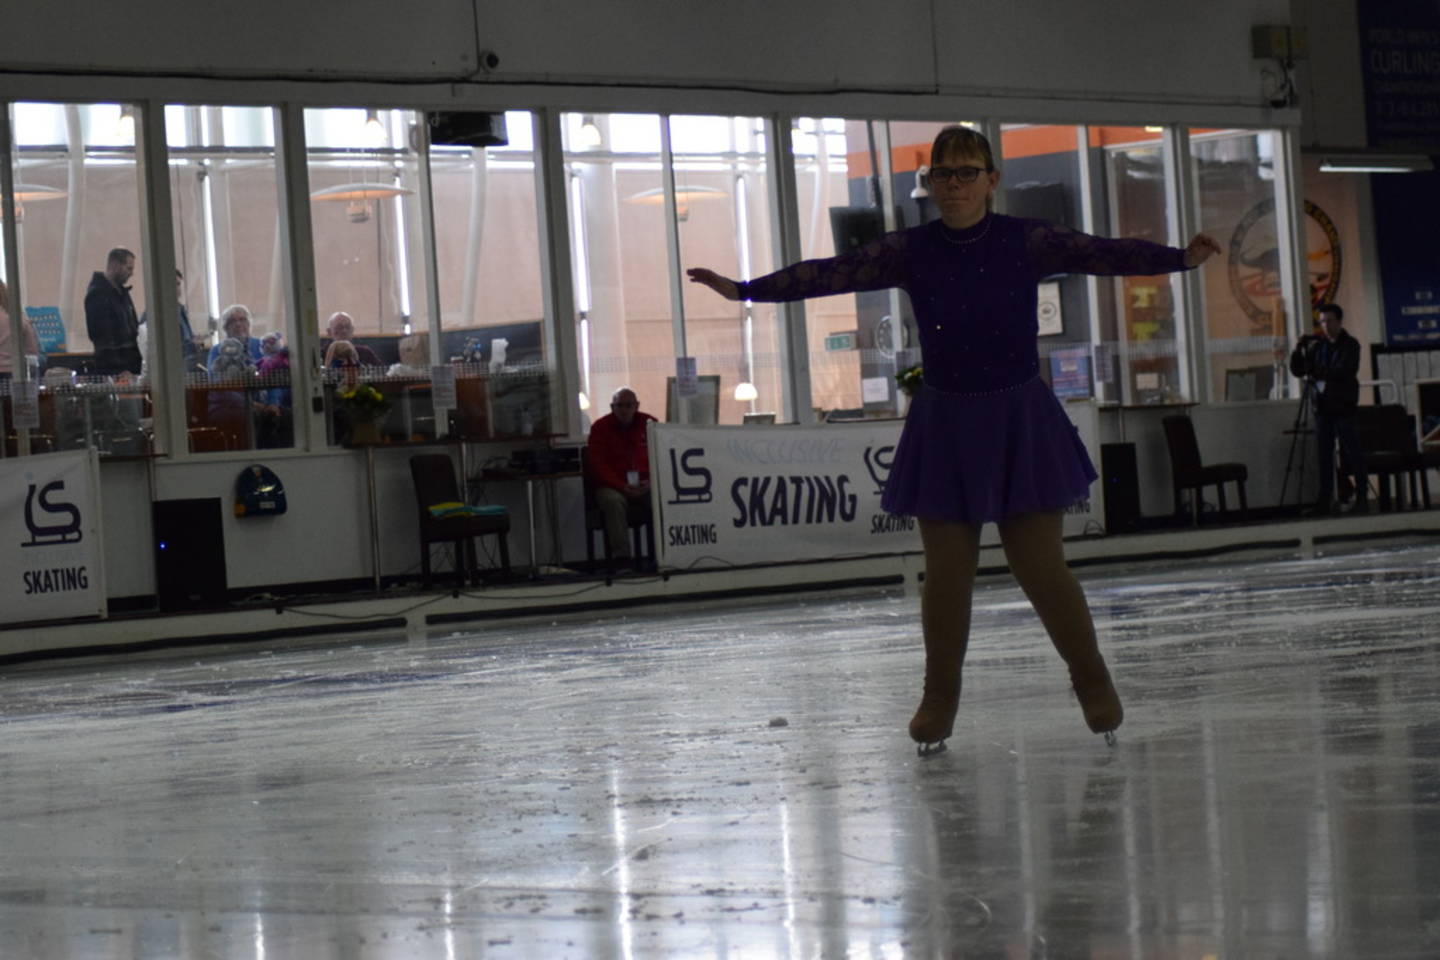 Vicki figure skating on the ice. 